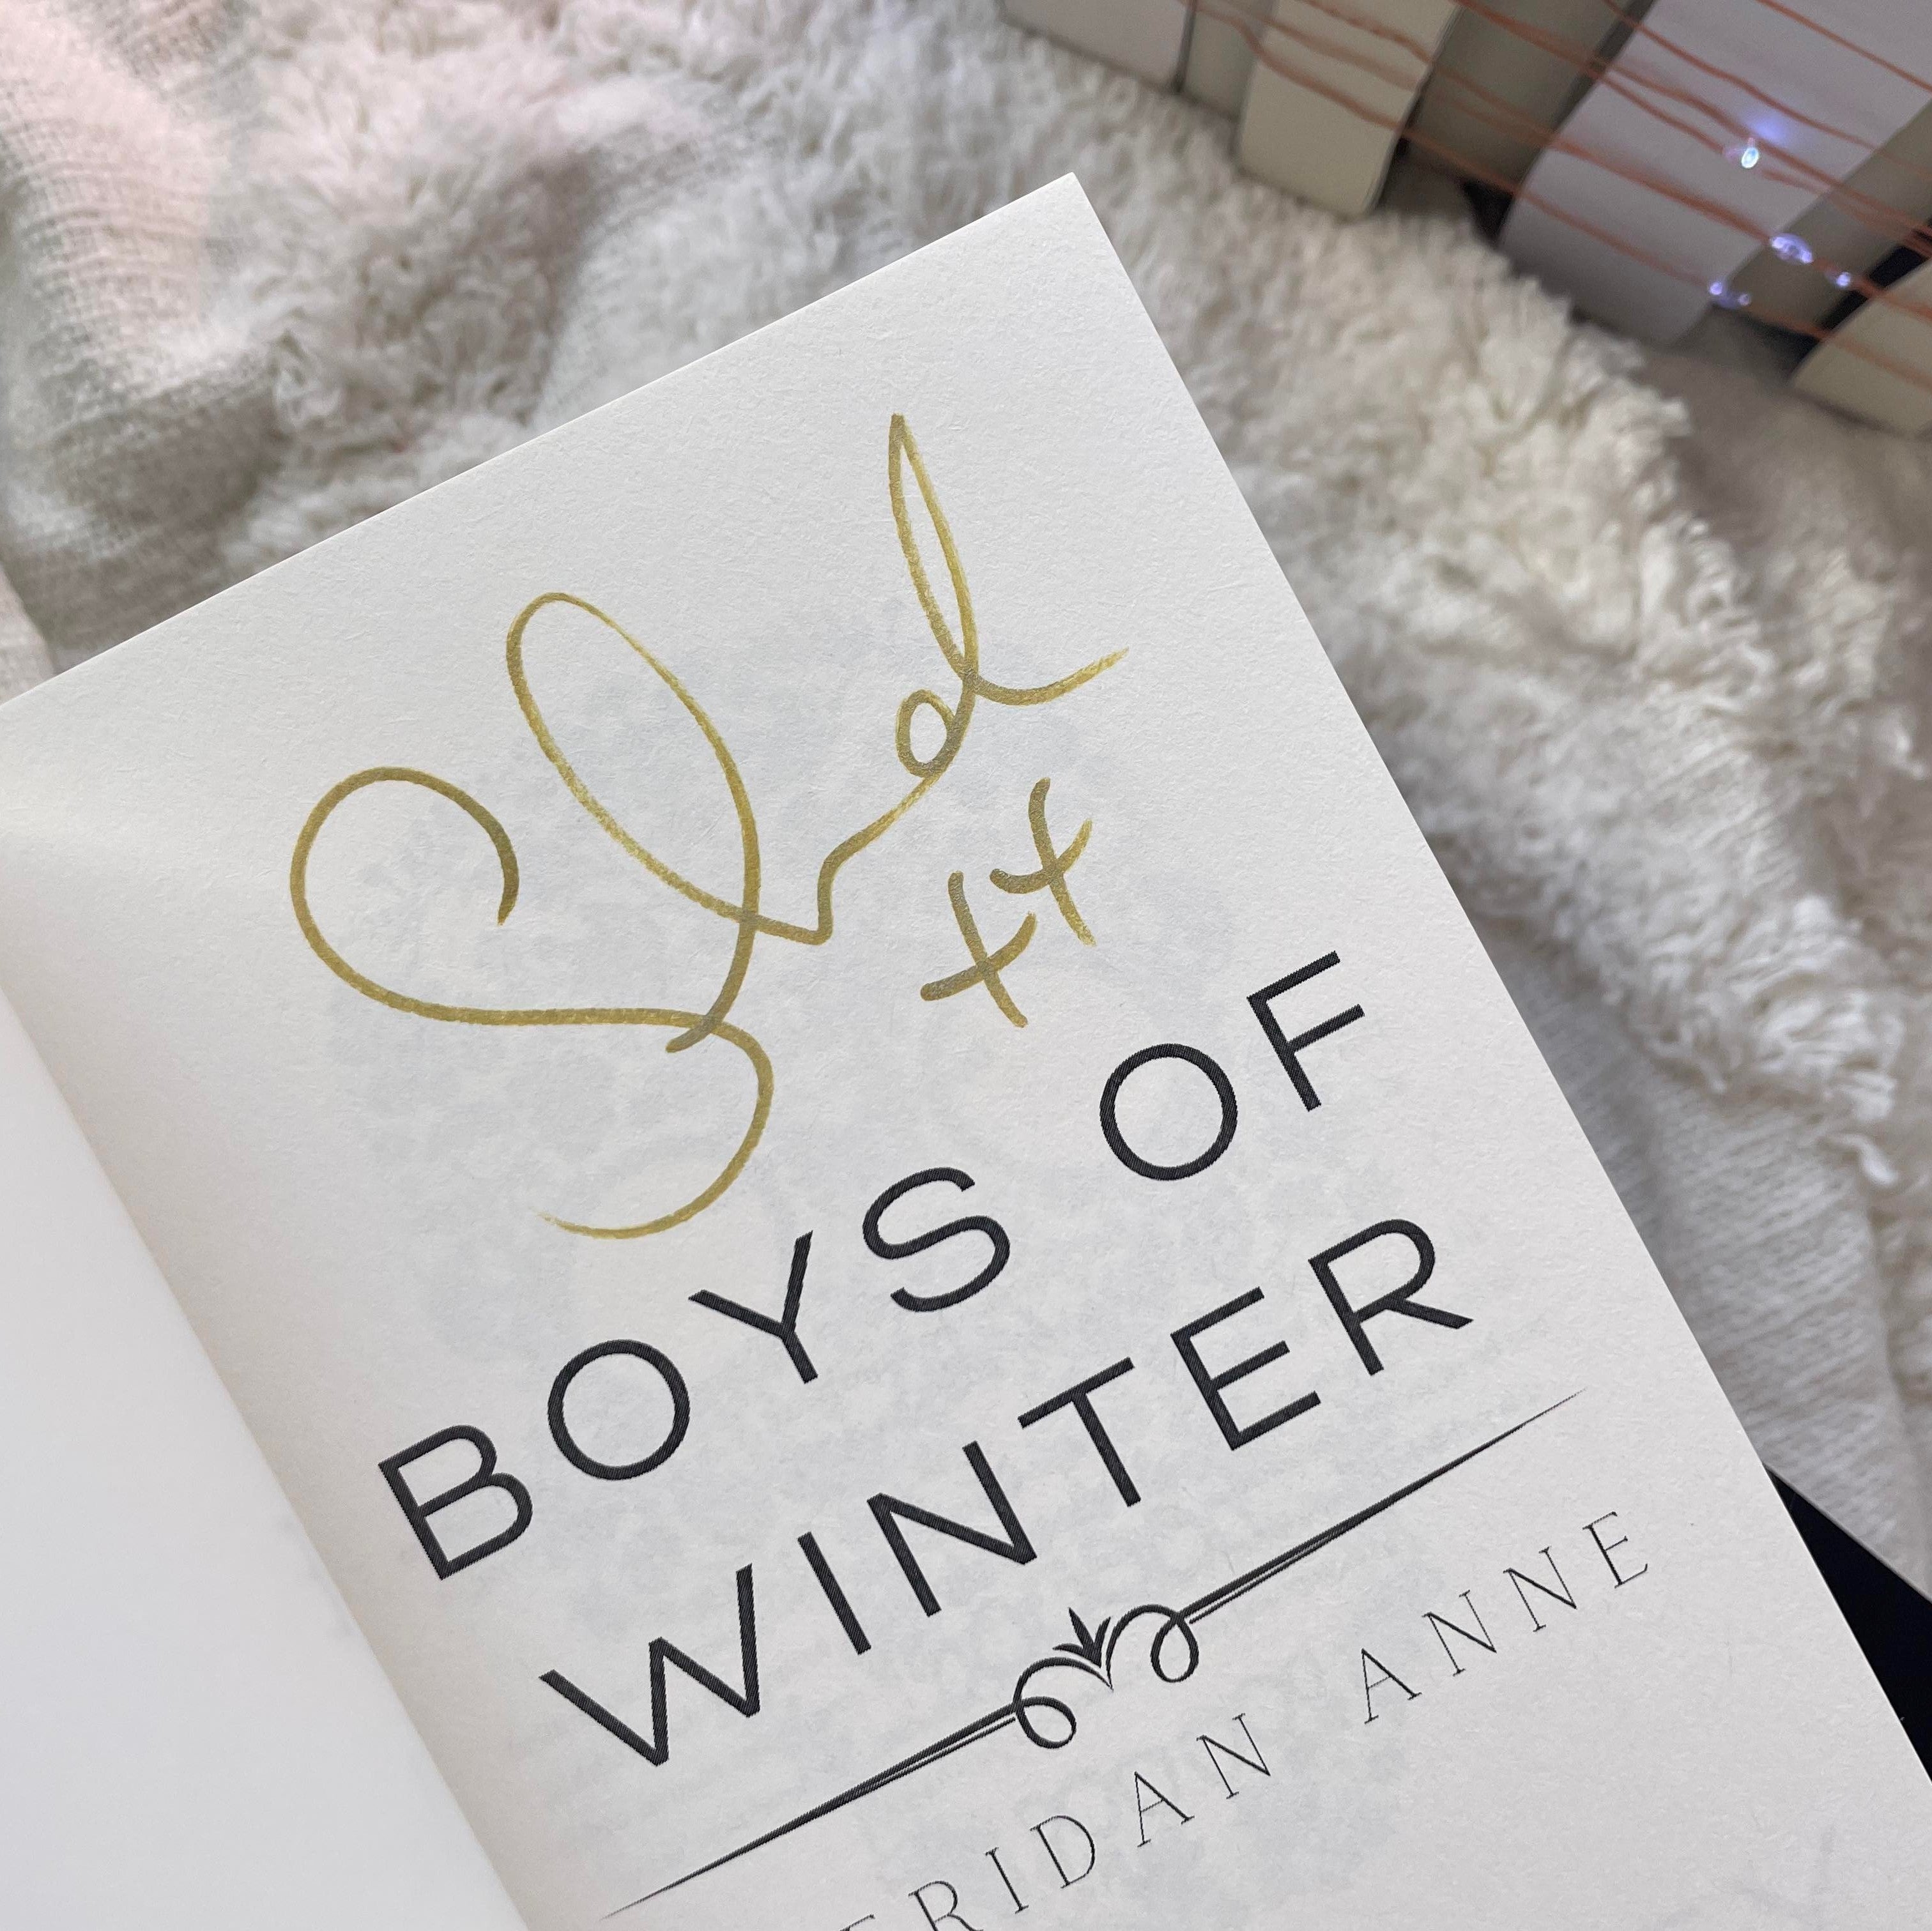 Boys of Winter: Foils by Sheridan Anne